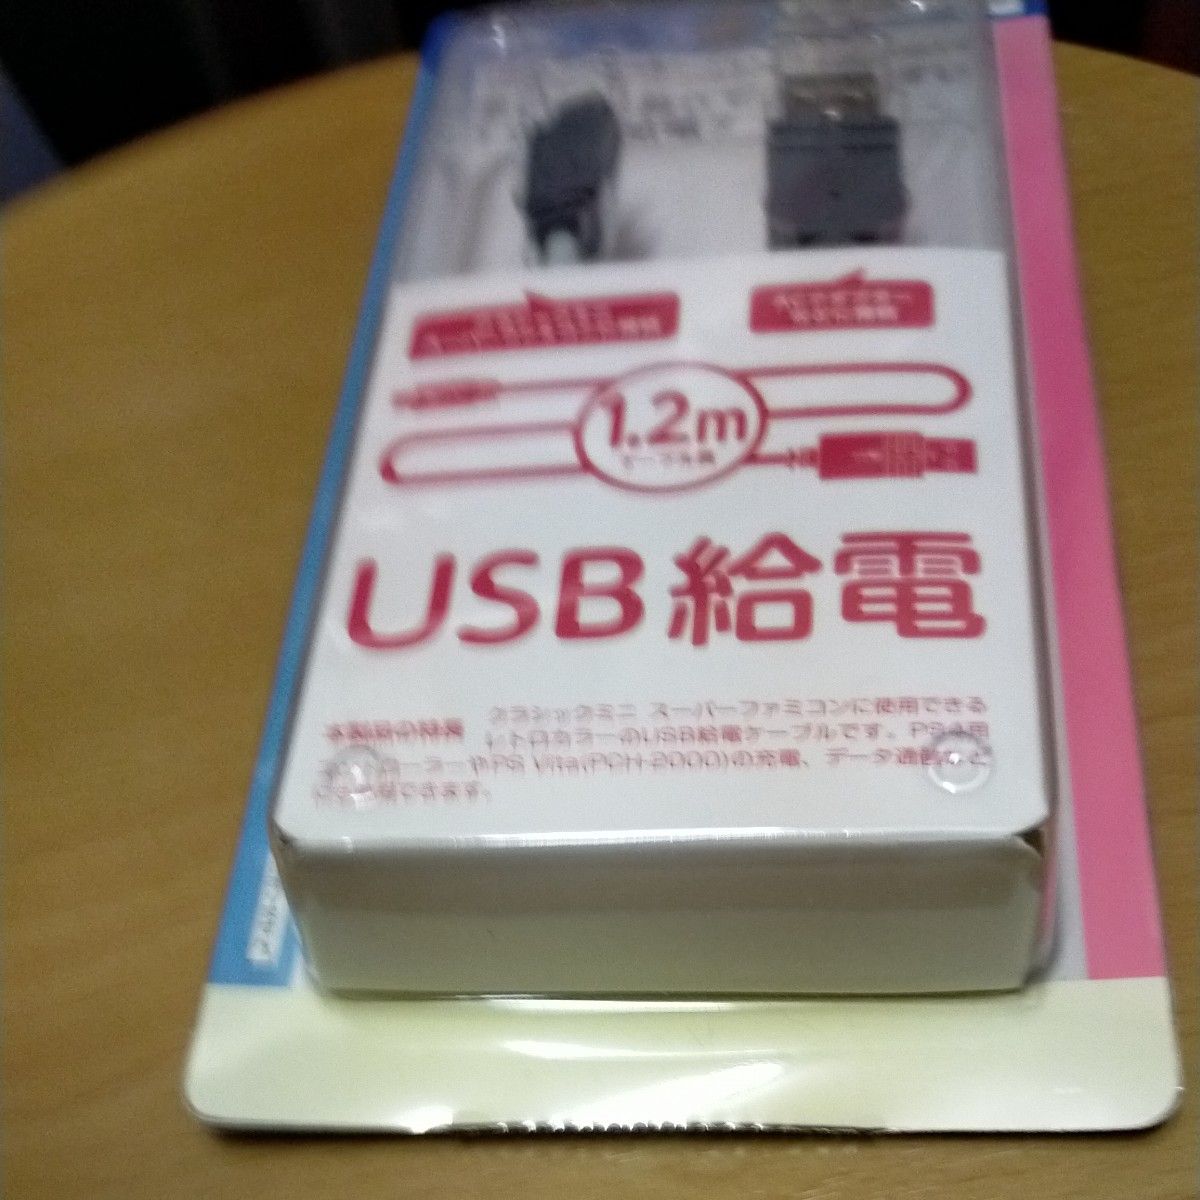 CYBER・USB給電ケーブル（クラシックミニ スーパーファミコン用） 1.2m CY-MSFCUSC1-GY USB